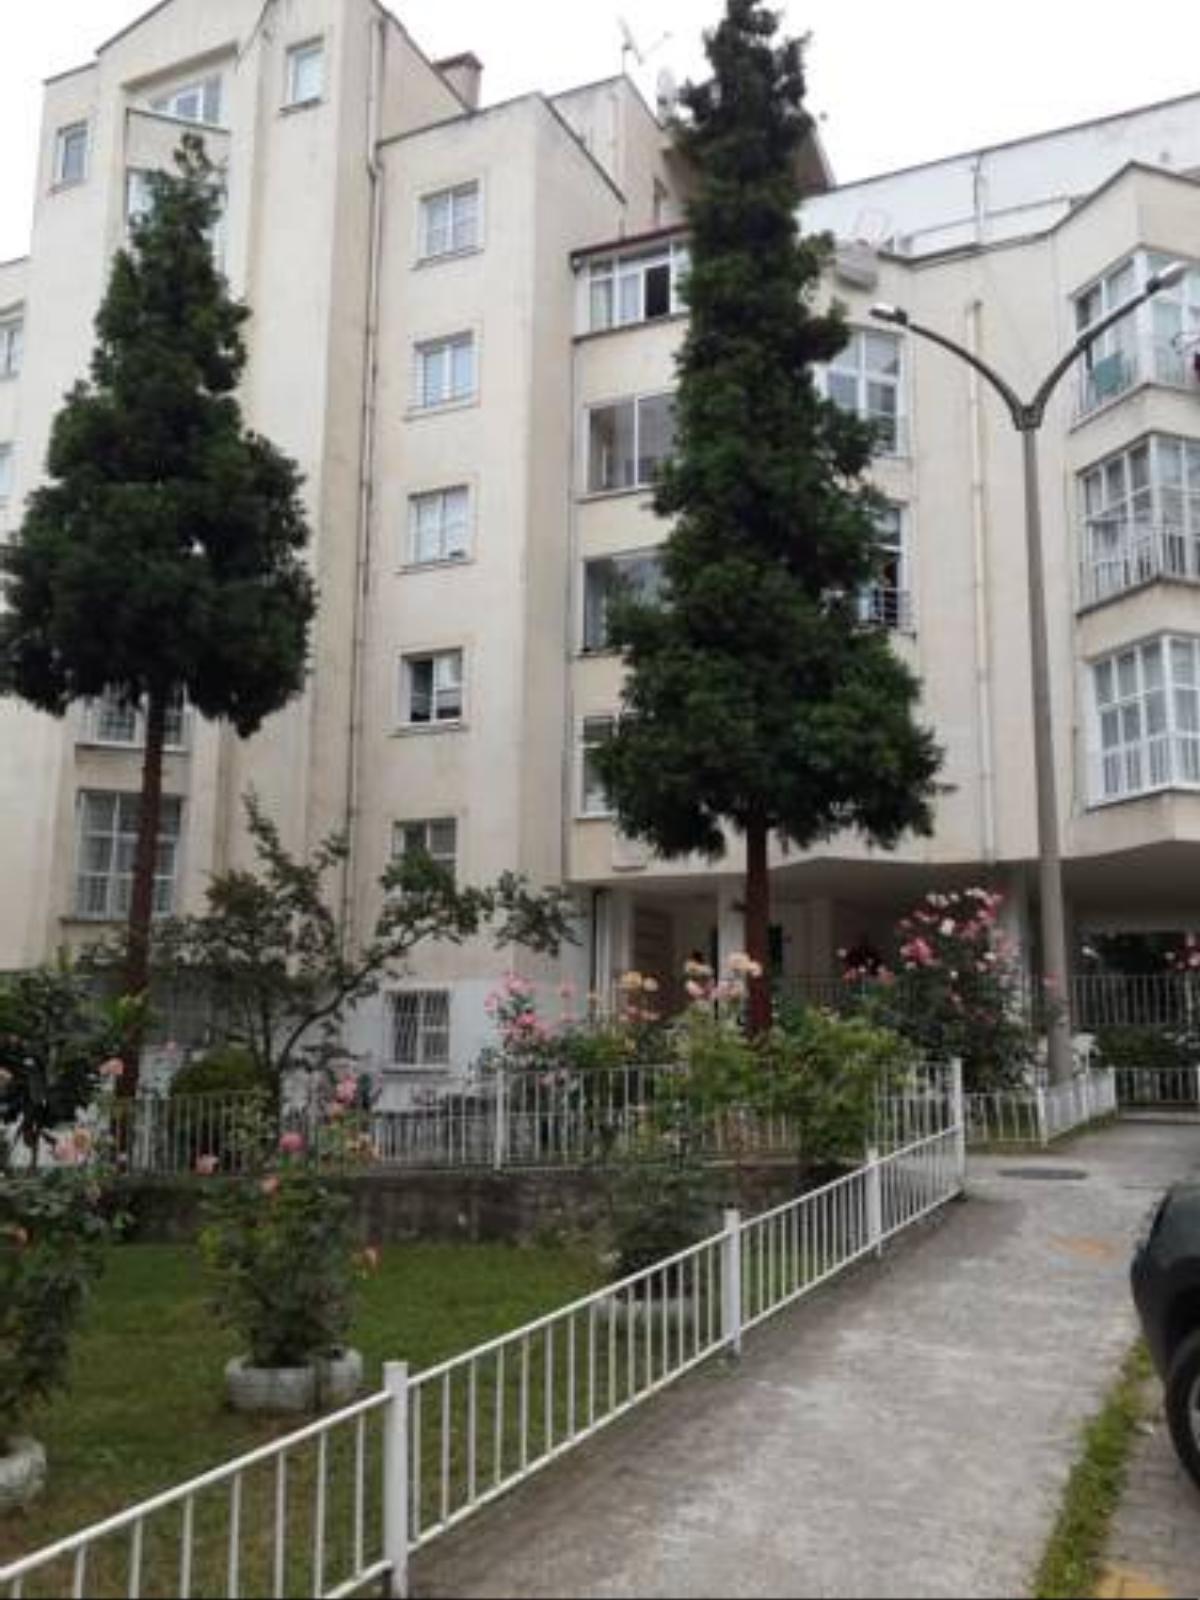 Gurgen Apartment Hotel Trabzon Turkey